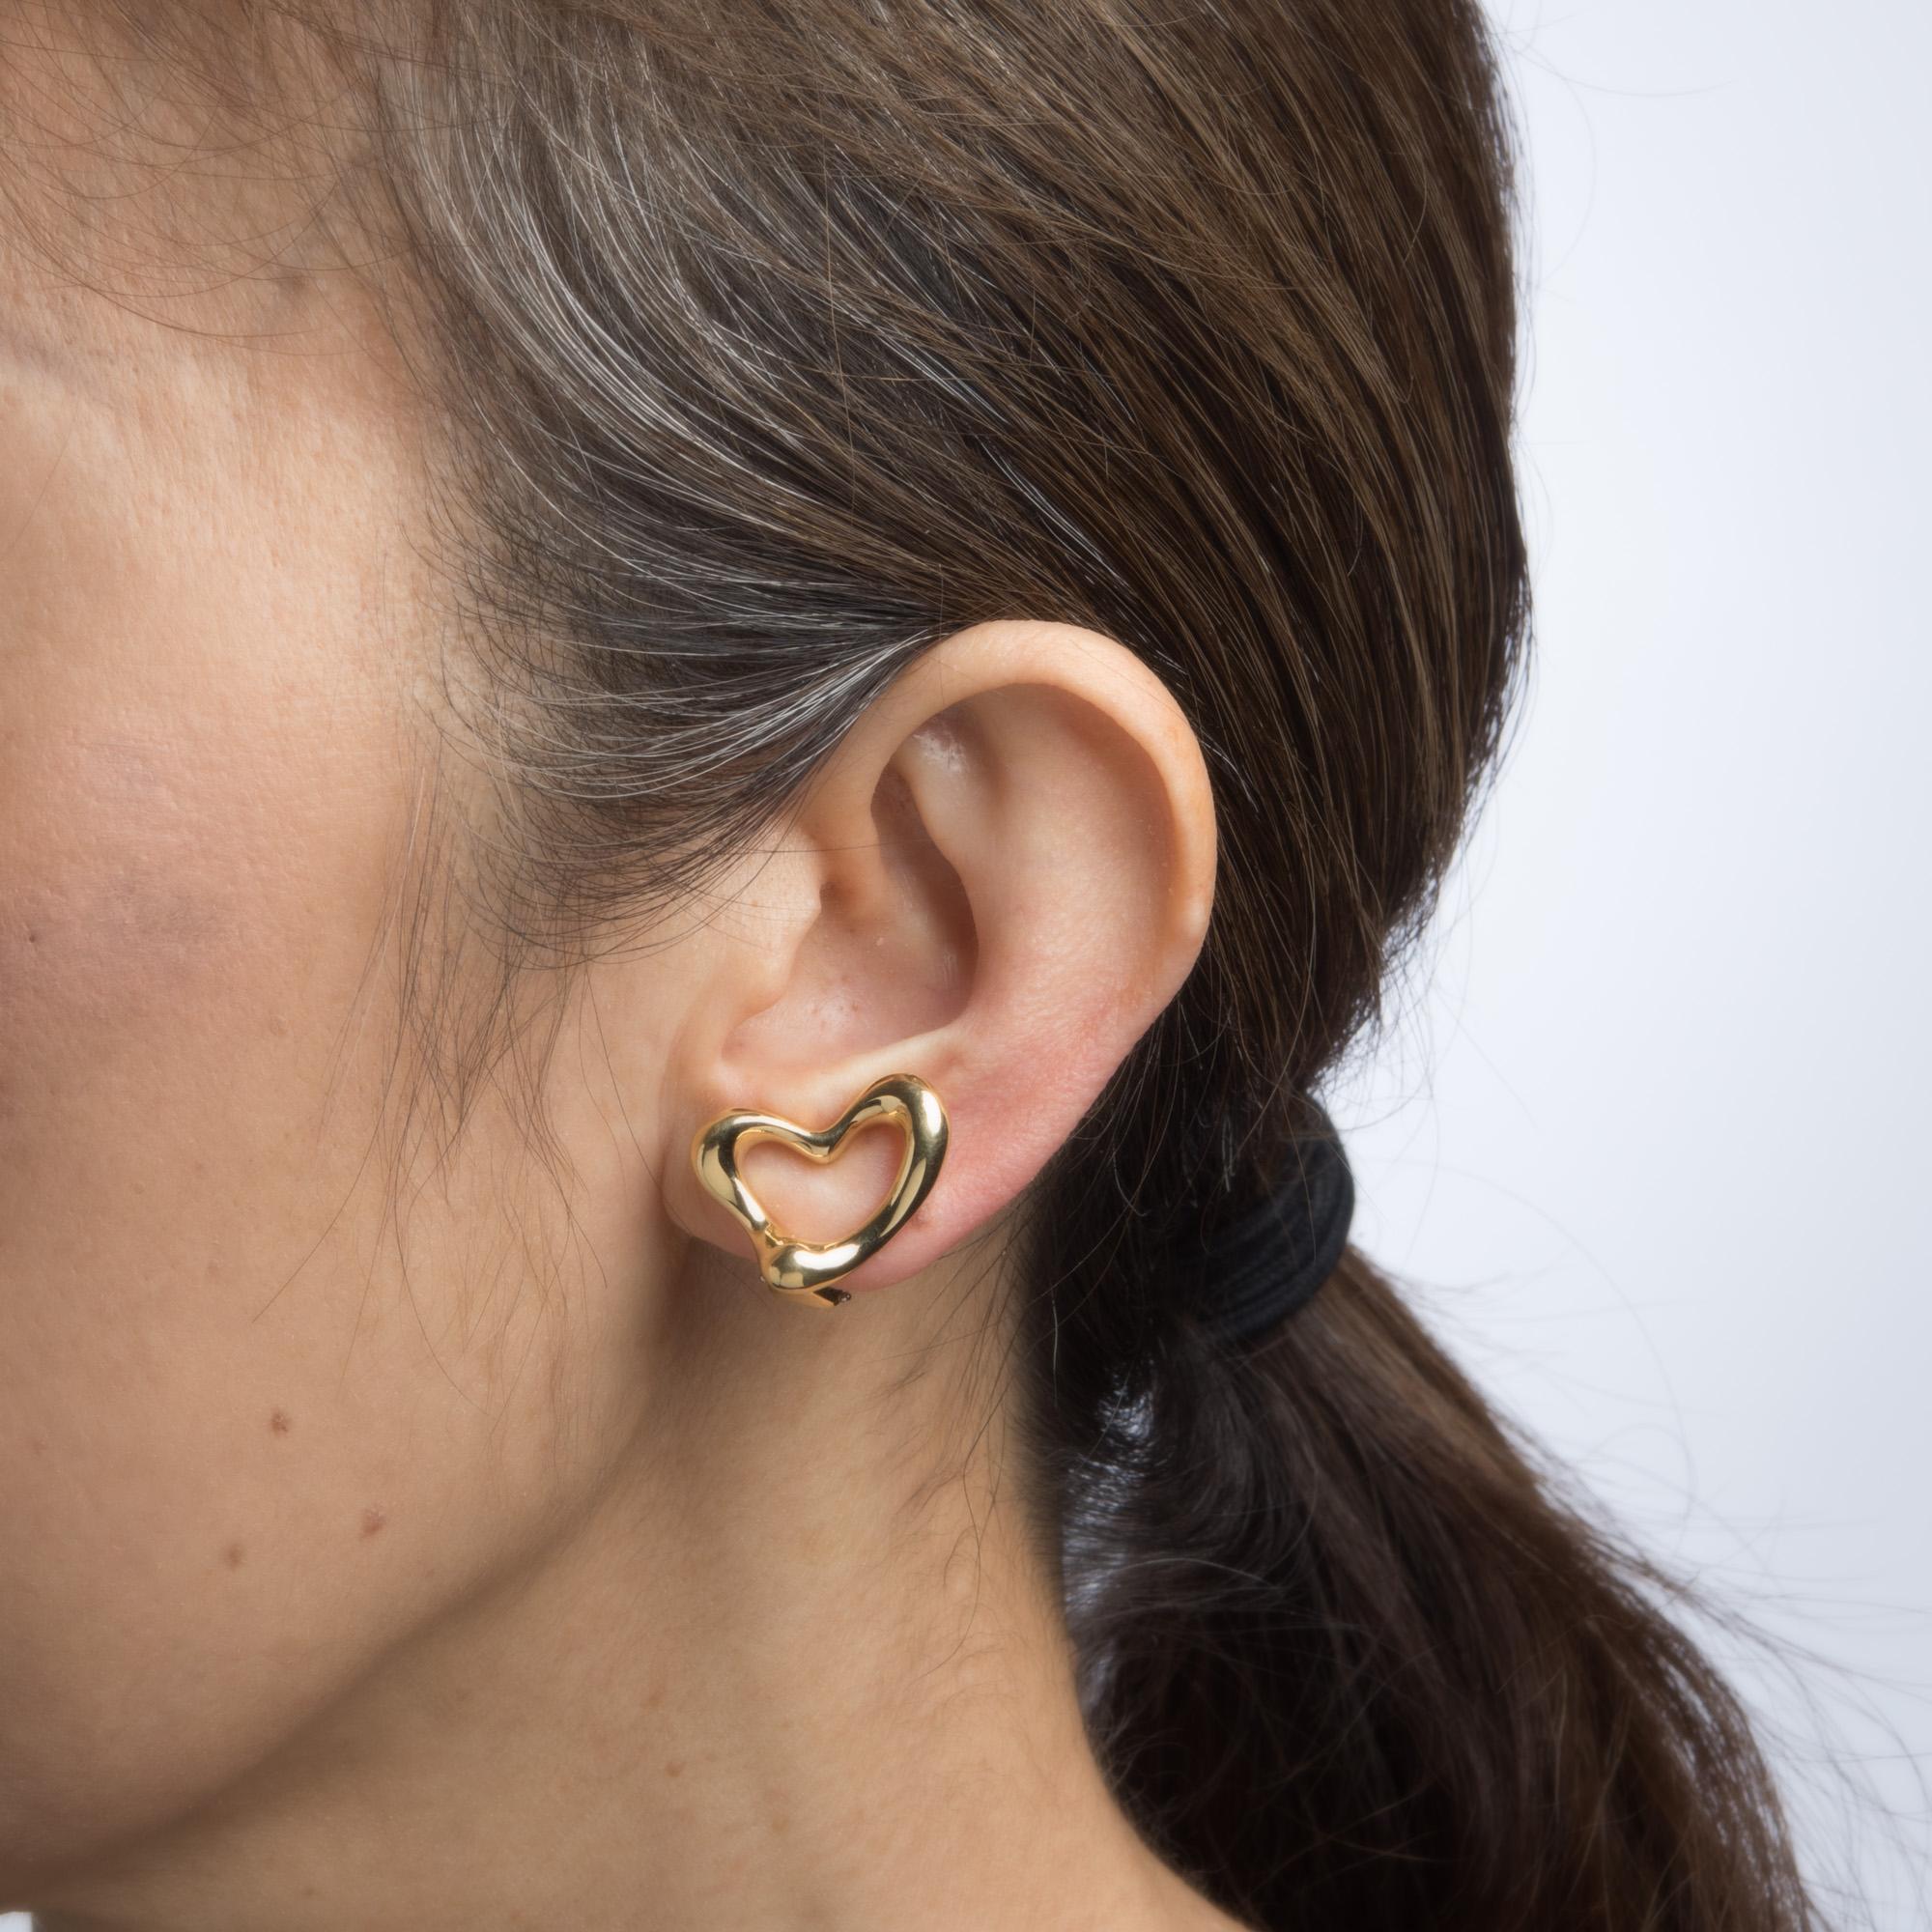 tiffany elsa peretti heart earrings